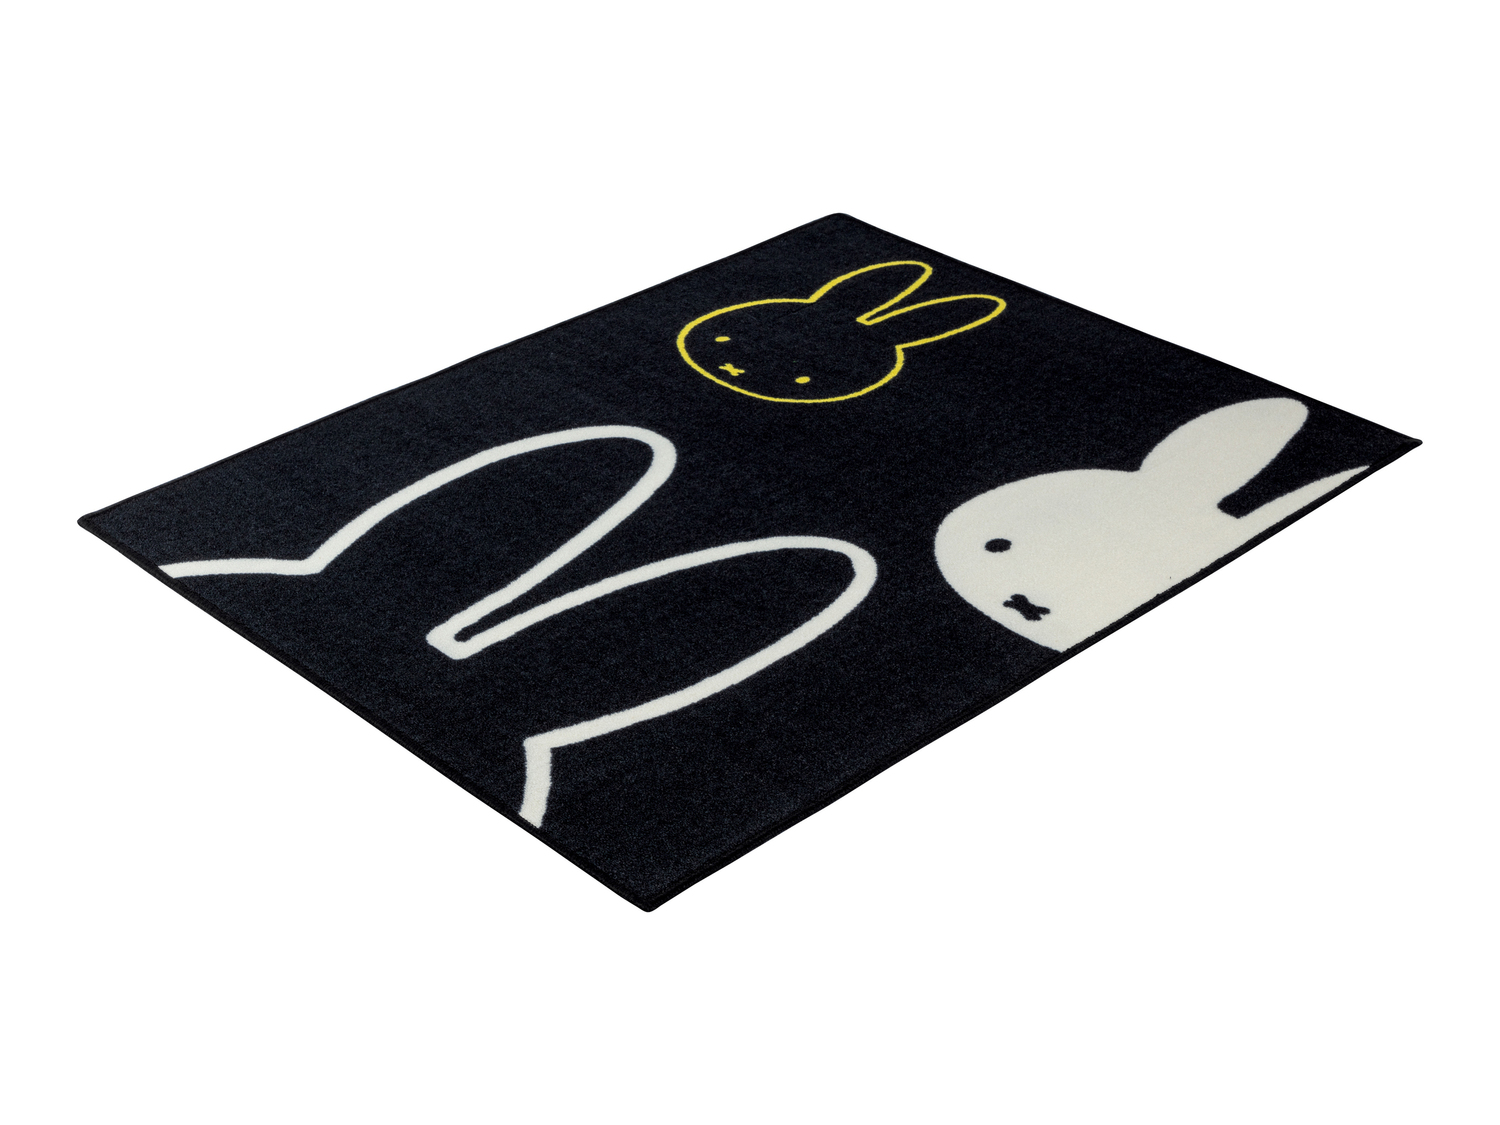 Tappeto Miffy, prezzo 14.99 &#8364;  
100 x 130 cm
Caratteristiche

- OEKO-TEX